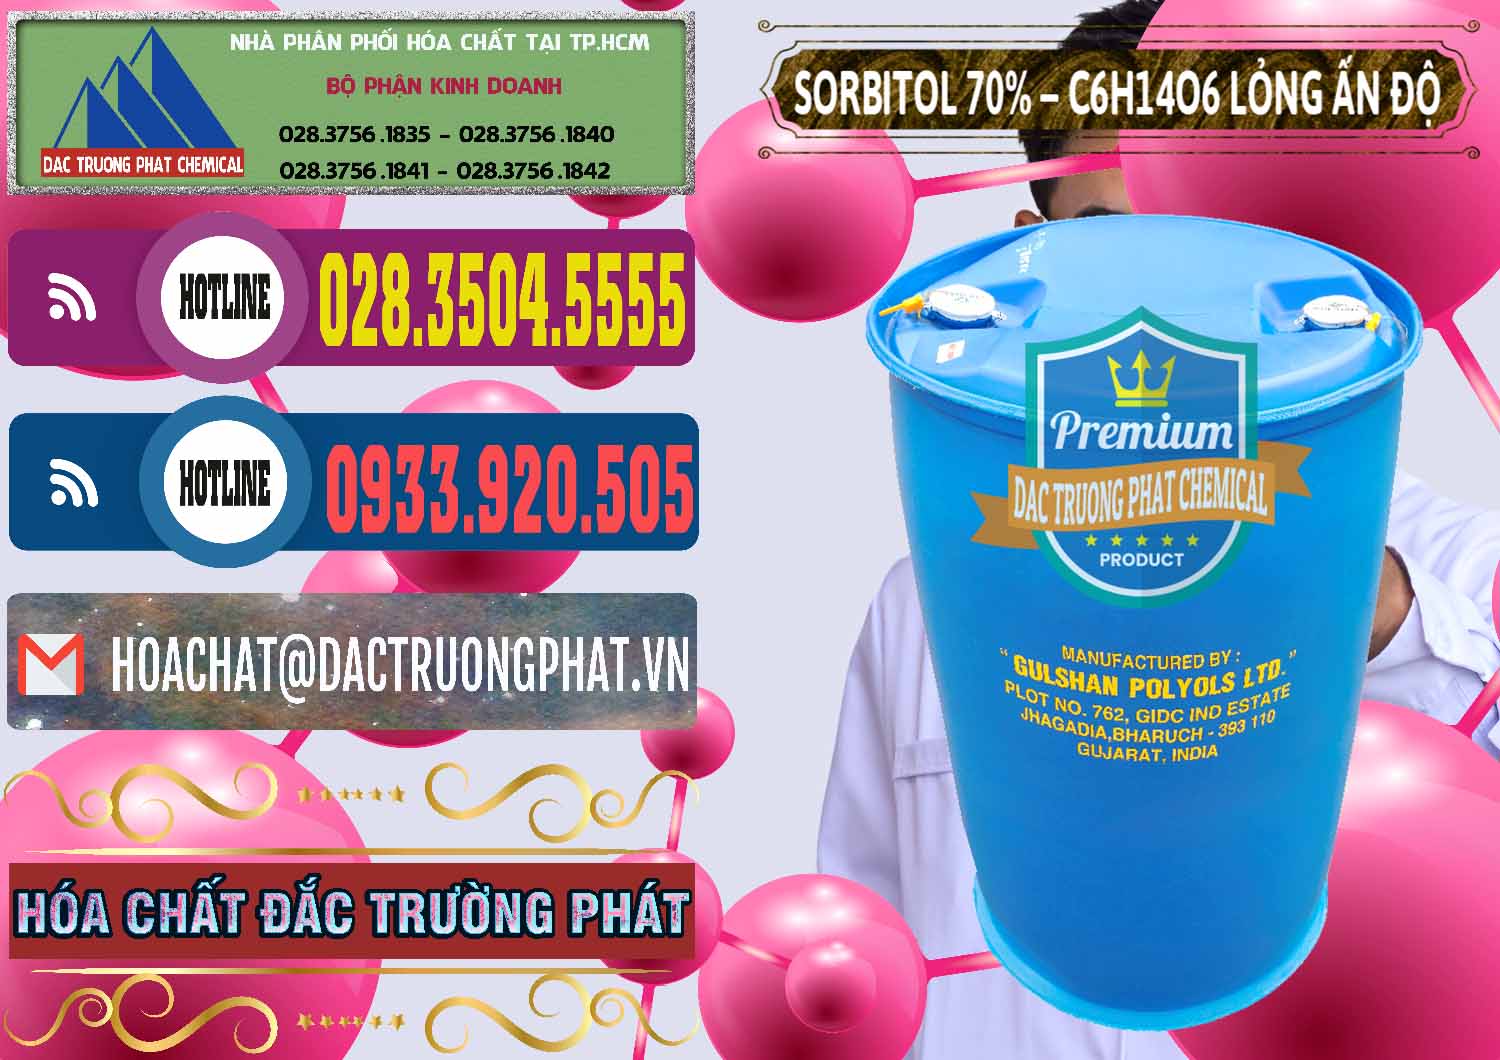 Chuyên bán ( cung cấp ) Sorbitol - C6H14O6 Lỏng 70% Food Grade Ấn Độ India - 0152 - Công ty chuyên bán ( cung cấp ) hóa chất tại TP.HCM - muabanhoachat.com.vn